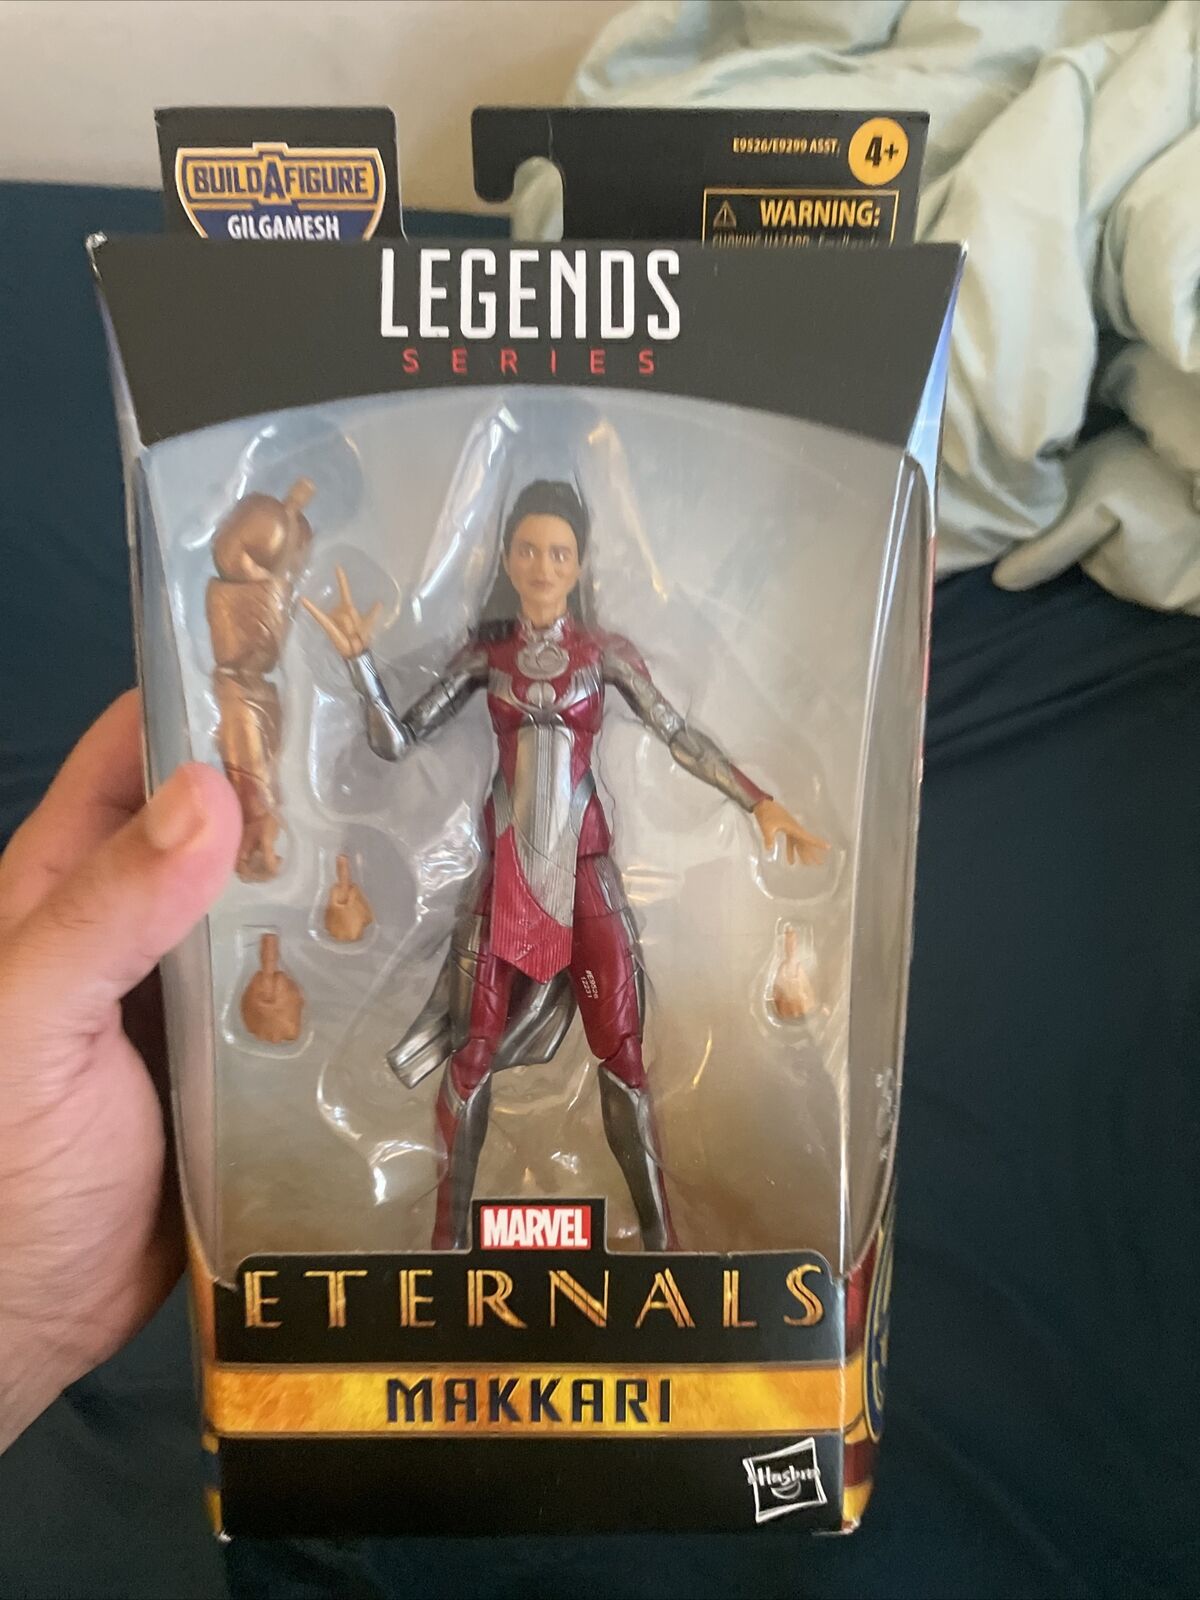 Marvel Legends Series Eternals - Makkari 6-inch Action Figure - NEW